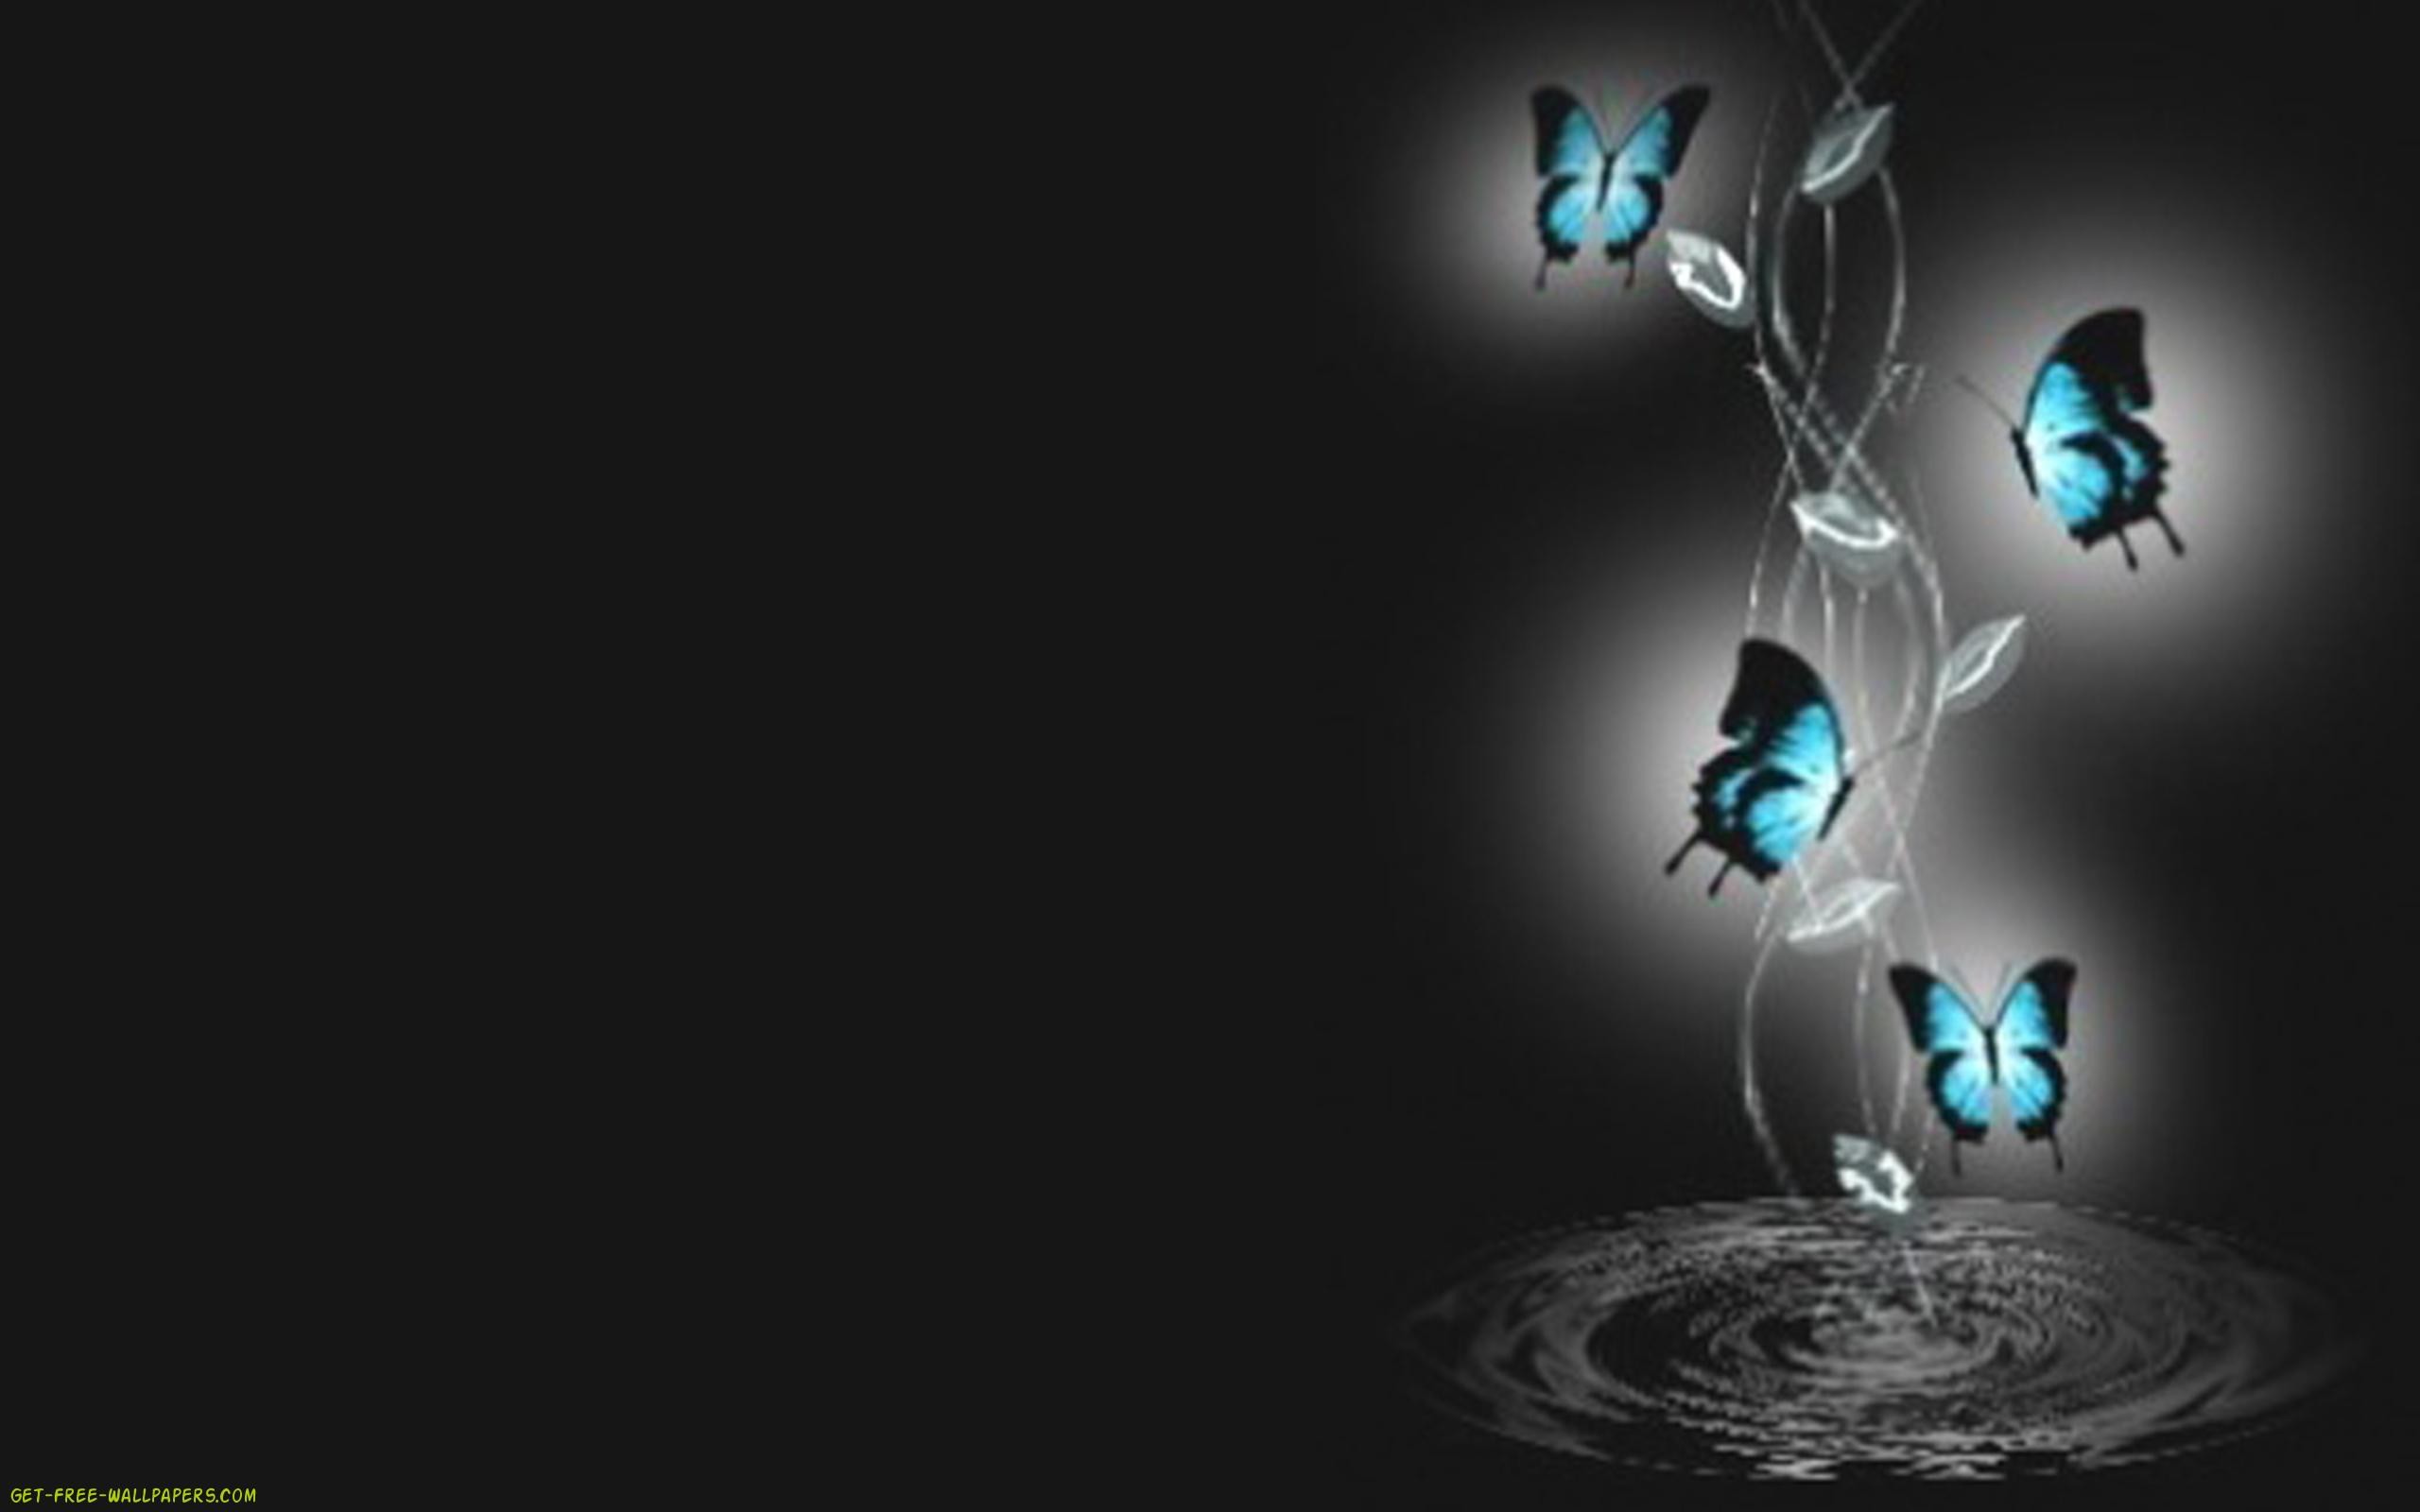 2560x1600, 3d Butterfly Wallpaper - Blue Butterfly In Water - HD Wallpaper 